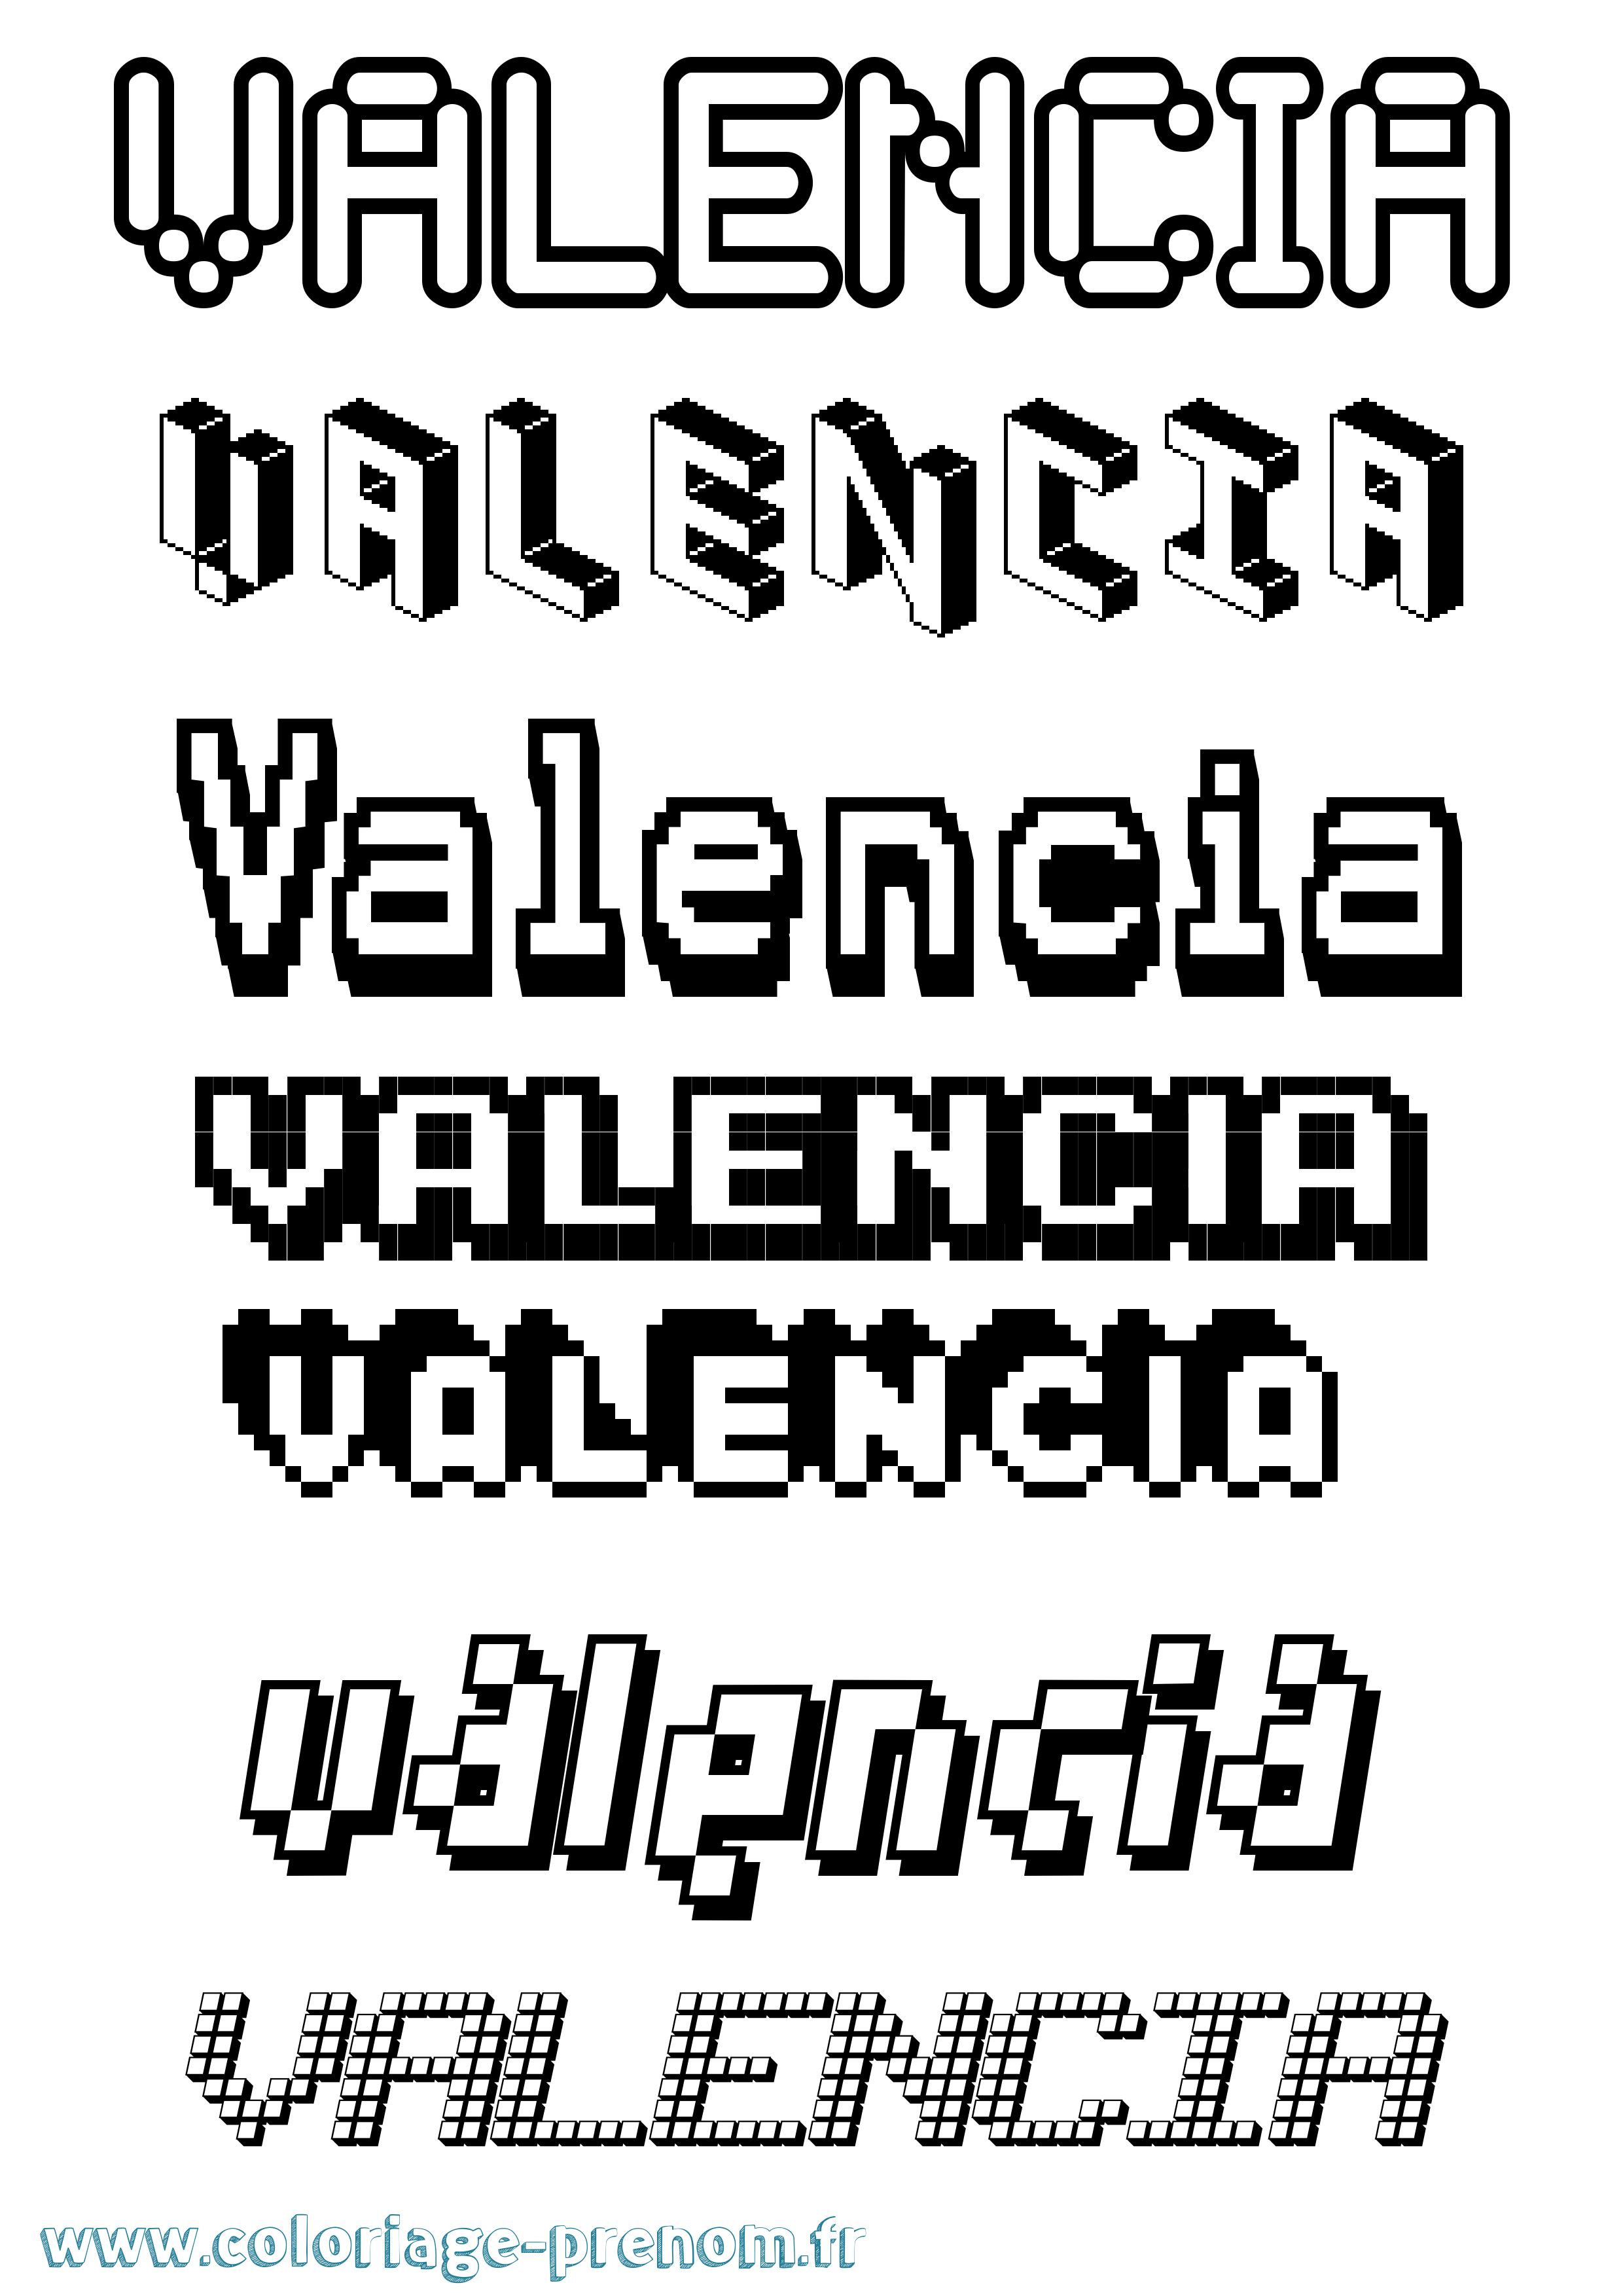 Coloriage prénom Valencia Pixel